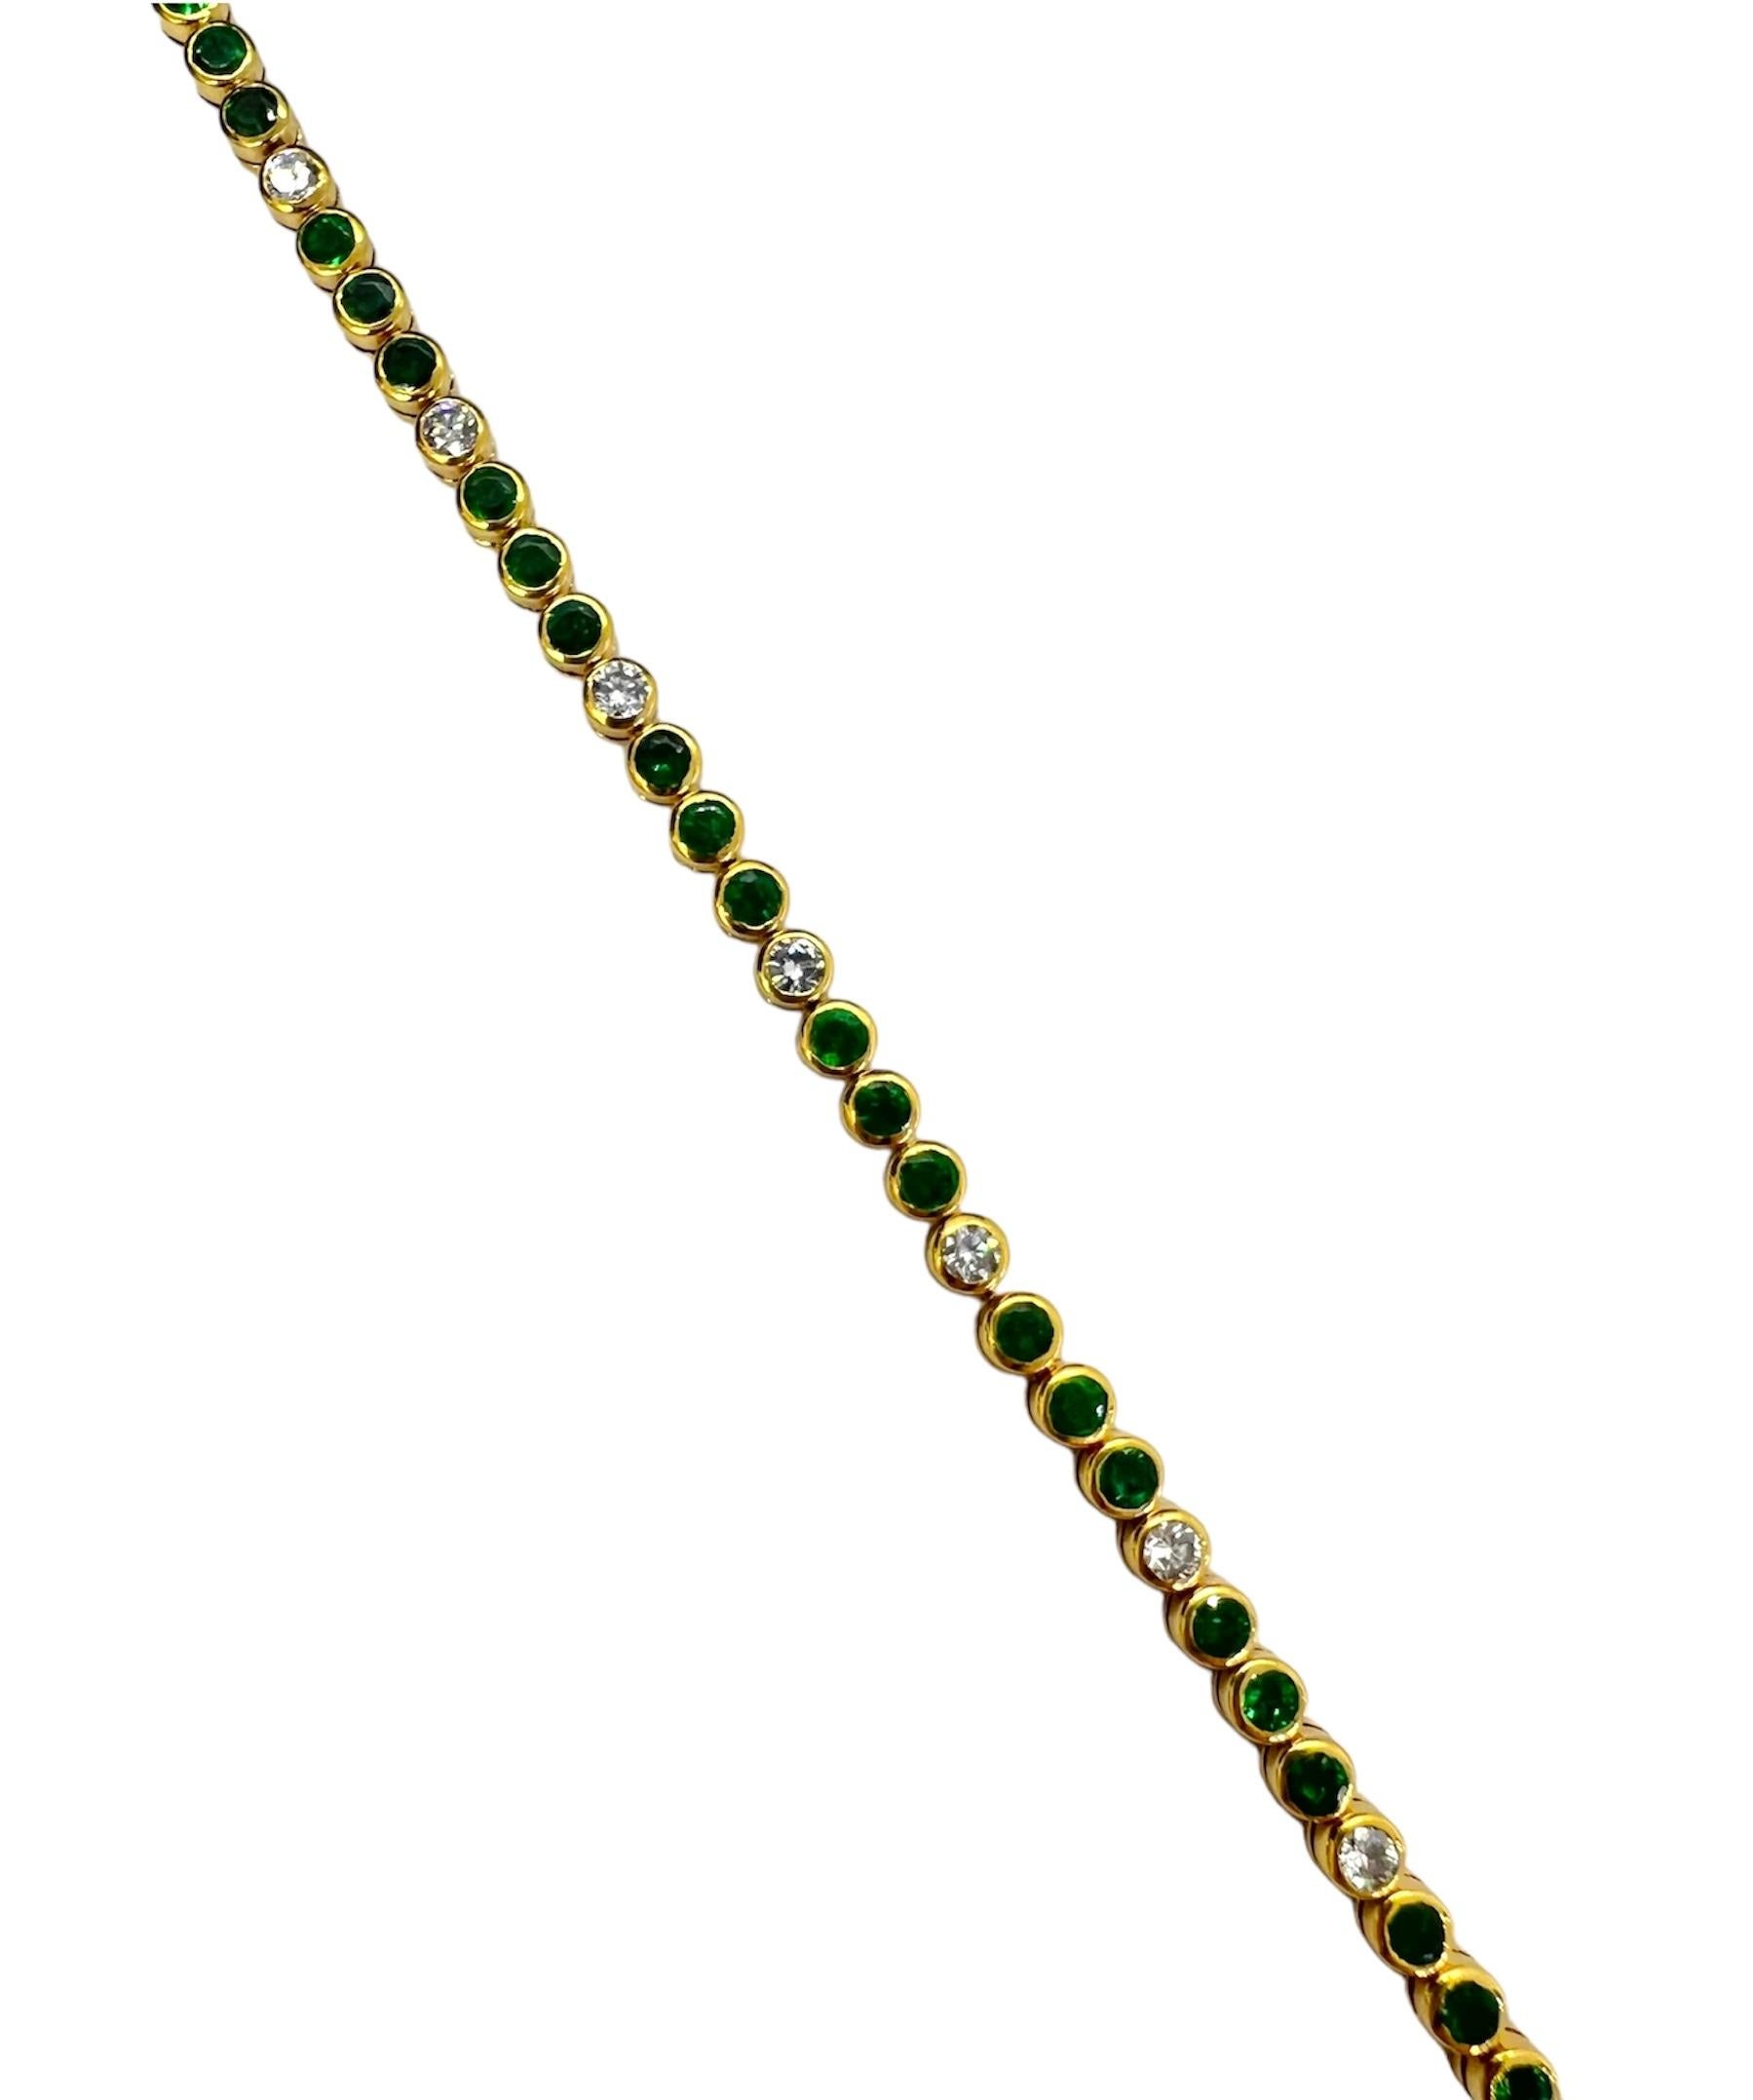 Armband aus 18 Karat Gelbgold mit runden Diamanten und Smaragden.

Sophia D von Joseph Dardashti LTD ist seit 35 Jahren weltweit bekannt und lässt sich vom klassischen Art-Déco-Design inspirieren, das mit modernen Fertigungstechniken verschmilzt.
